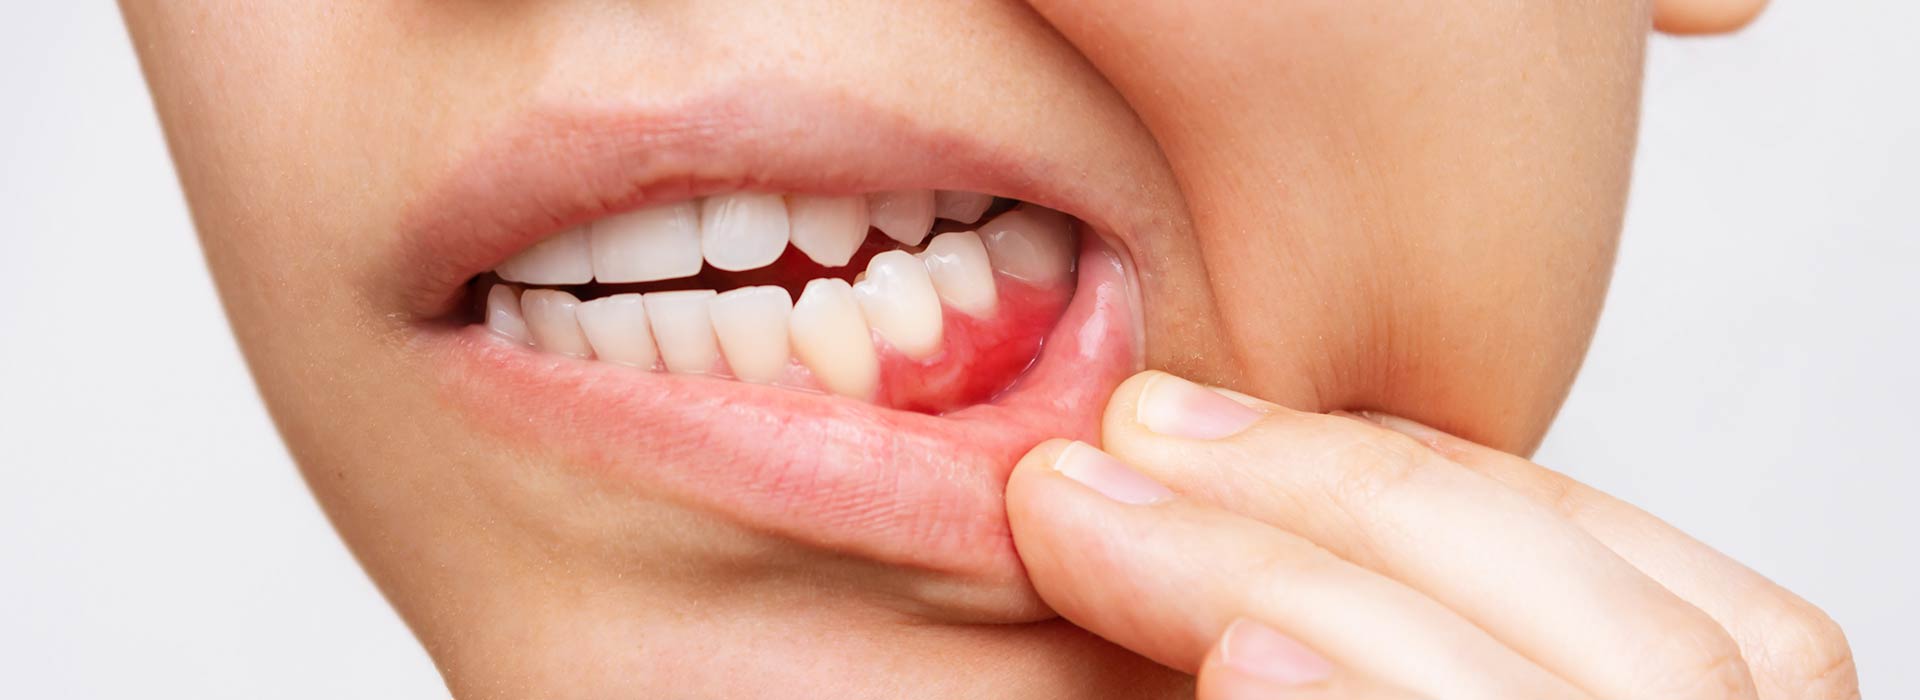 Qué es la periodontitis? Lo que necesitas saber sobre el dolor de muelas